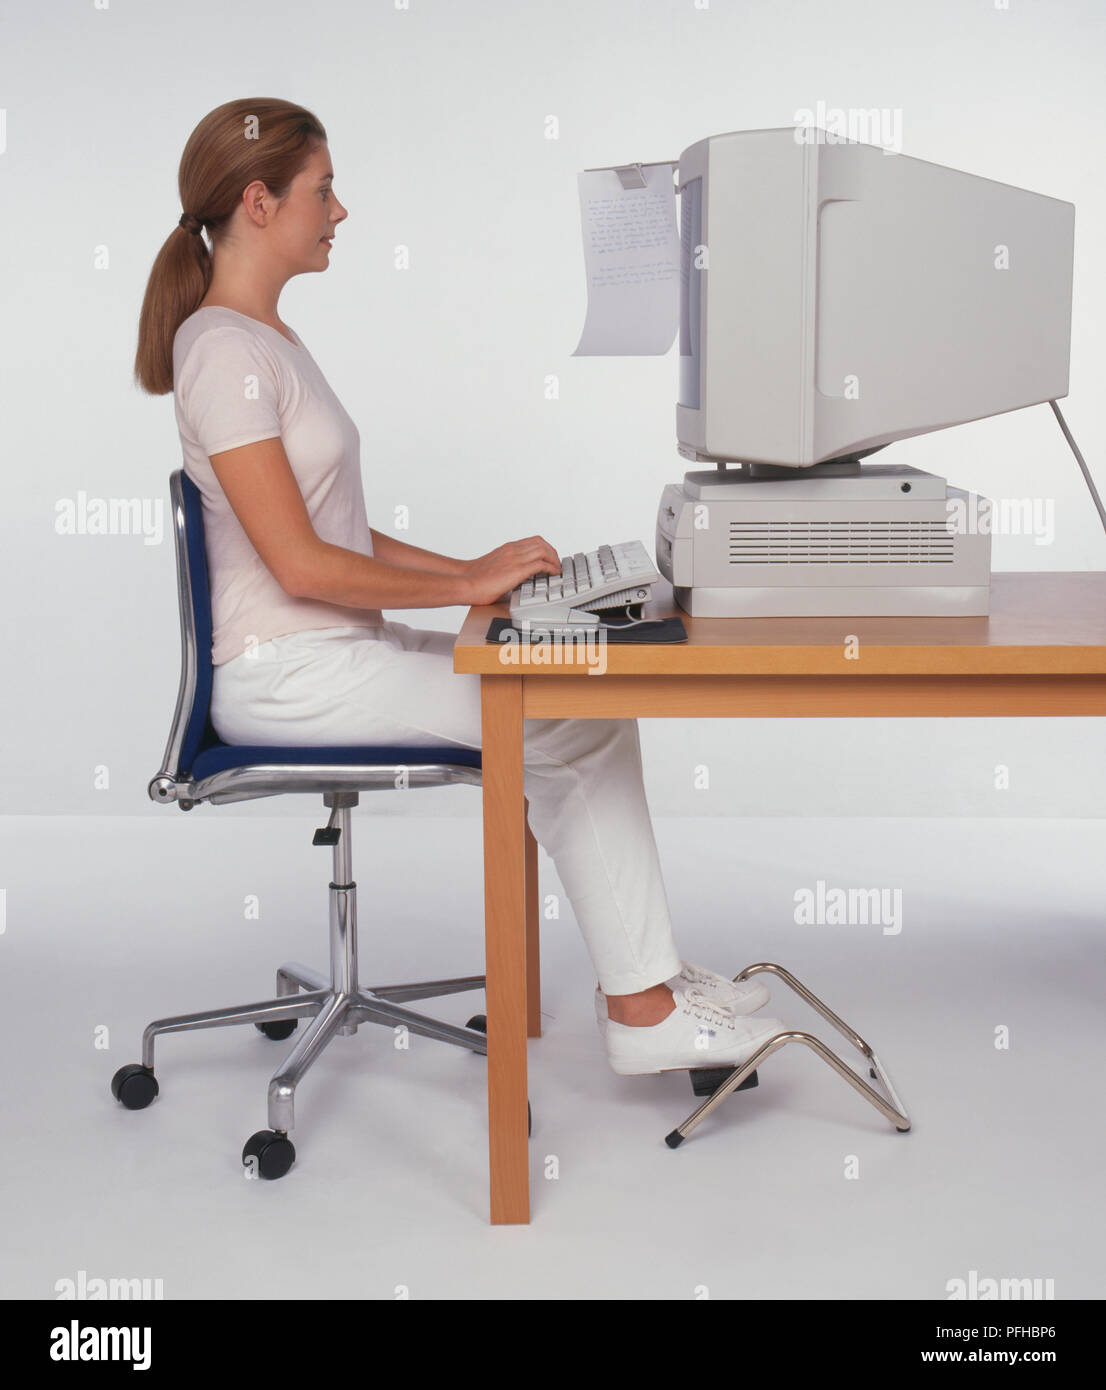 Frau sitzt an einem Schreibtisch mit einem Computer, Füße auf eine Fußstütze, Seitenansicht Stockfoto